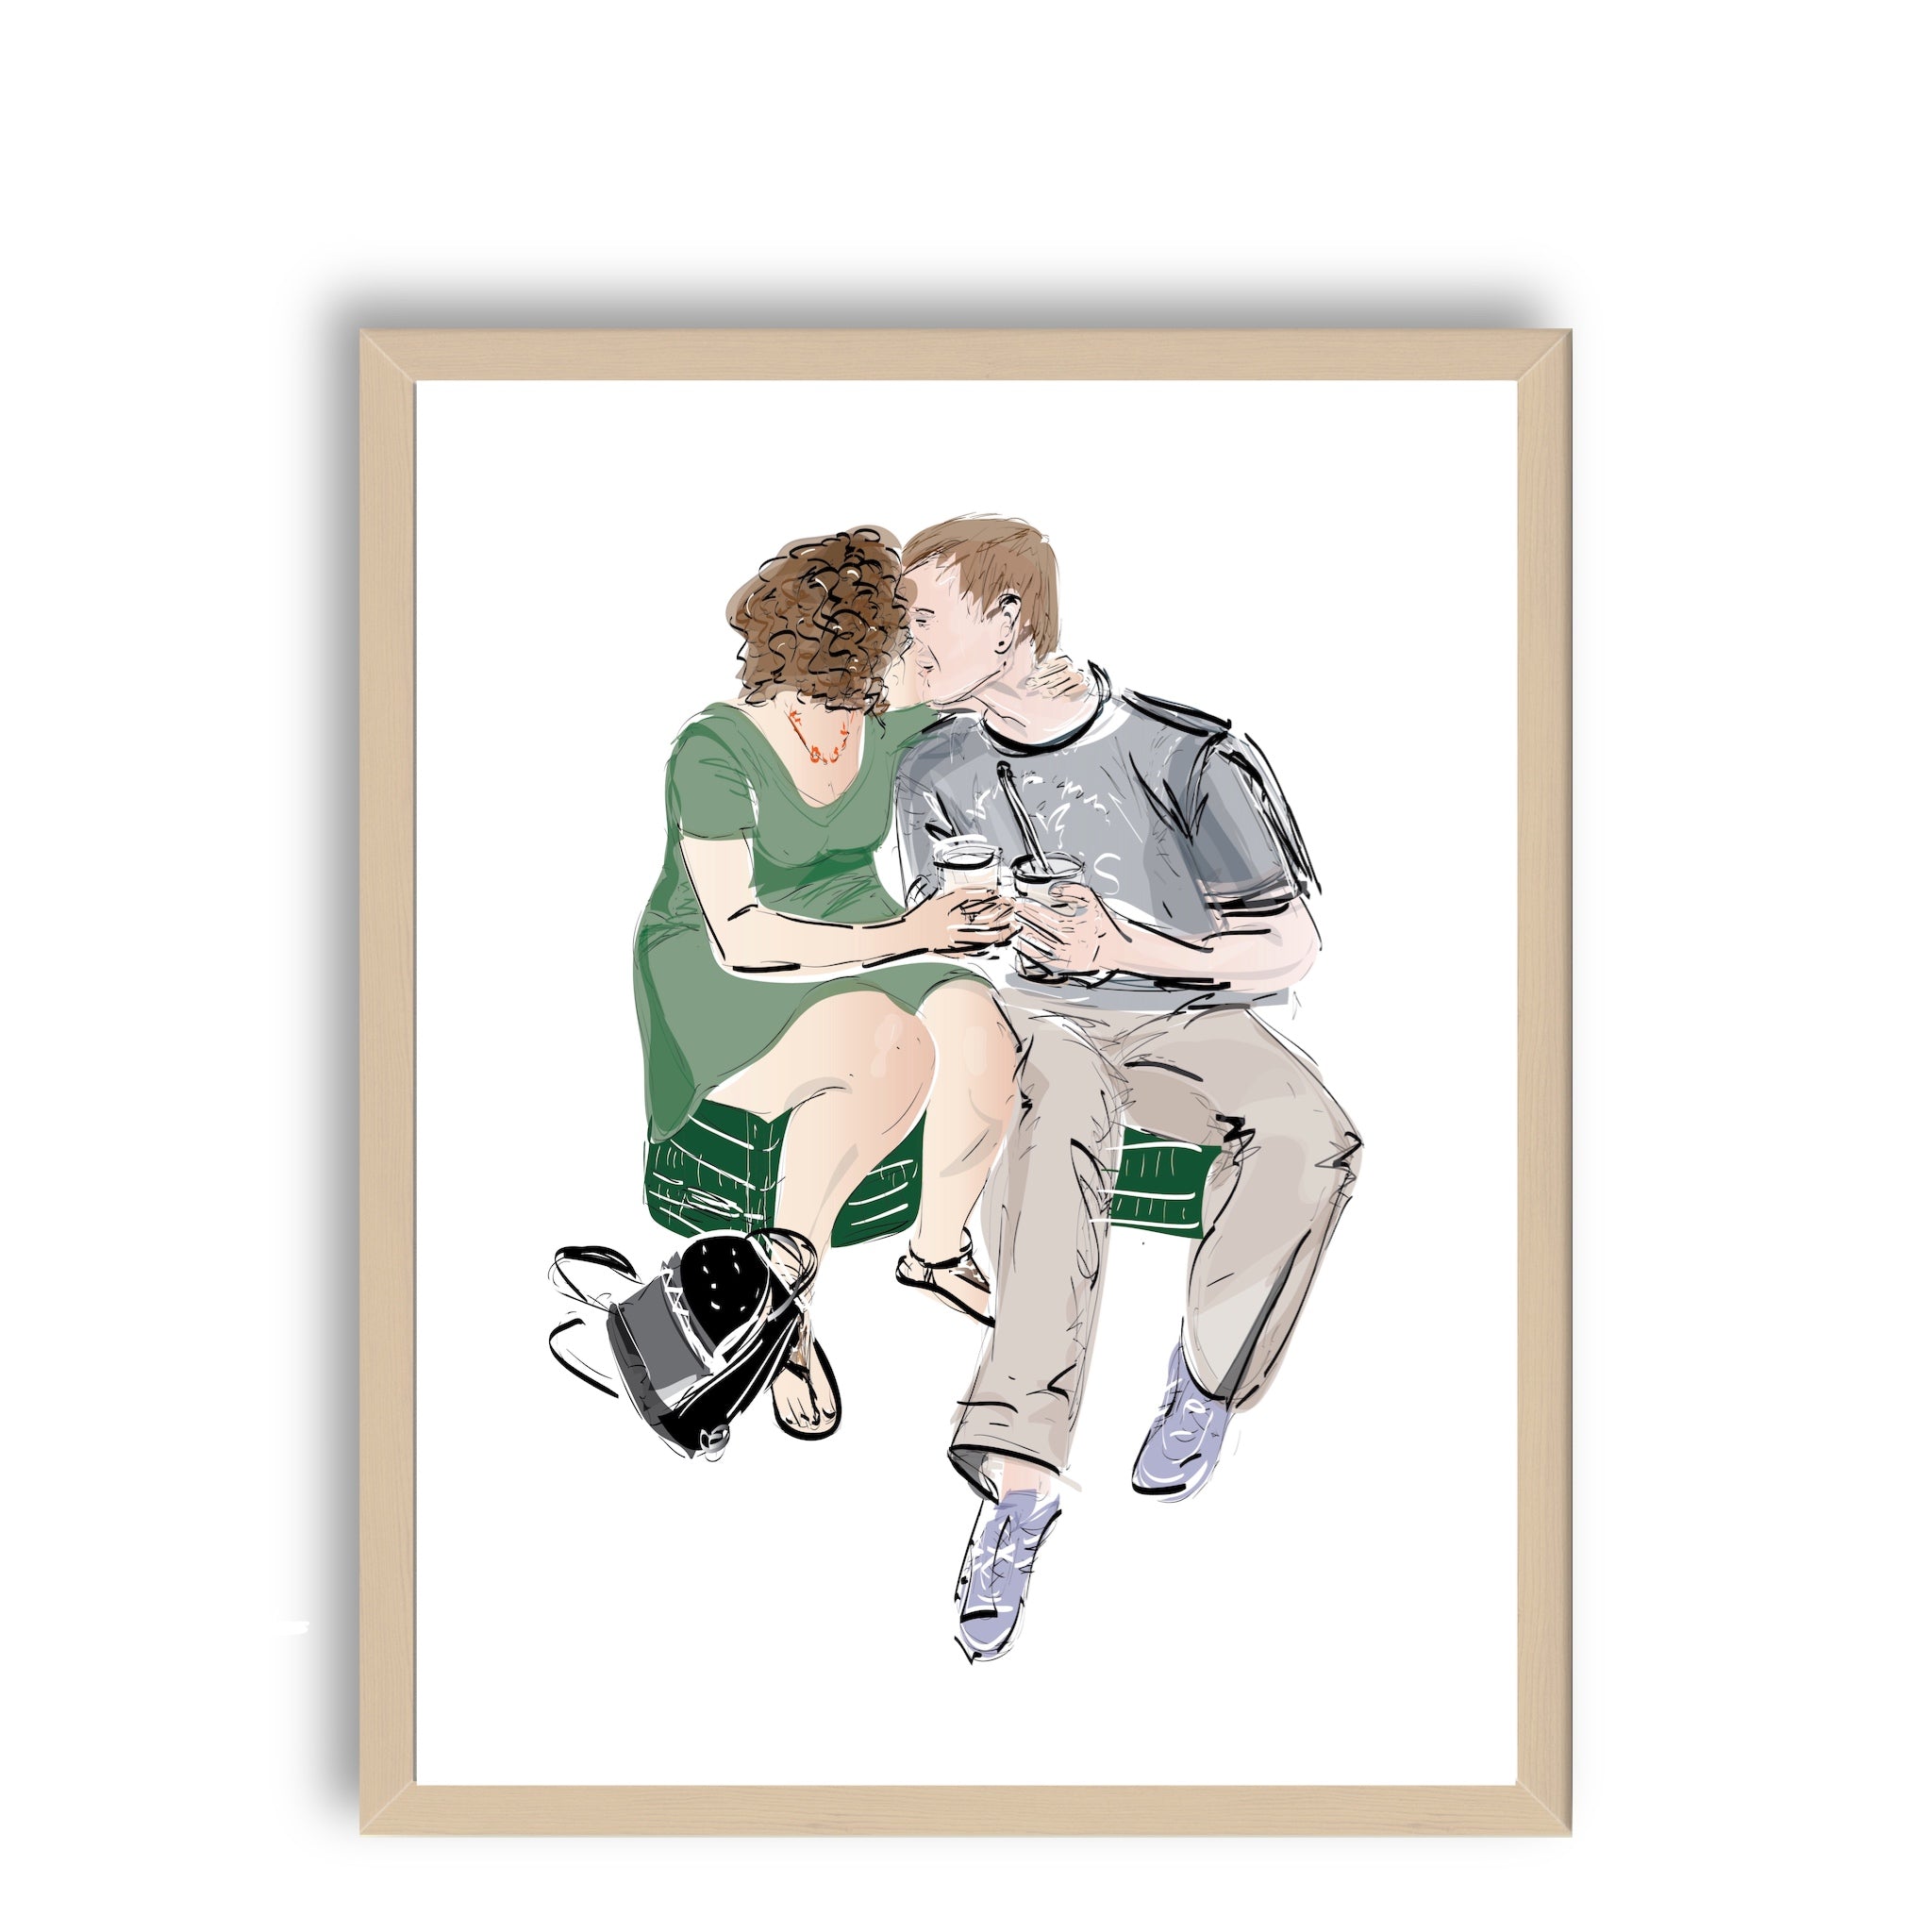 רומנטיקה עירונית - זוג מאוהב מתנשק בישיבה על ארגז תנובה ירוק - ILANIT SHAMIA | HOME